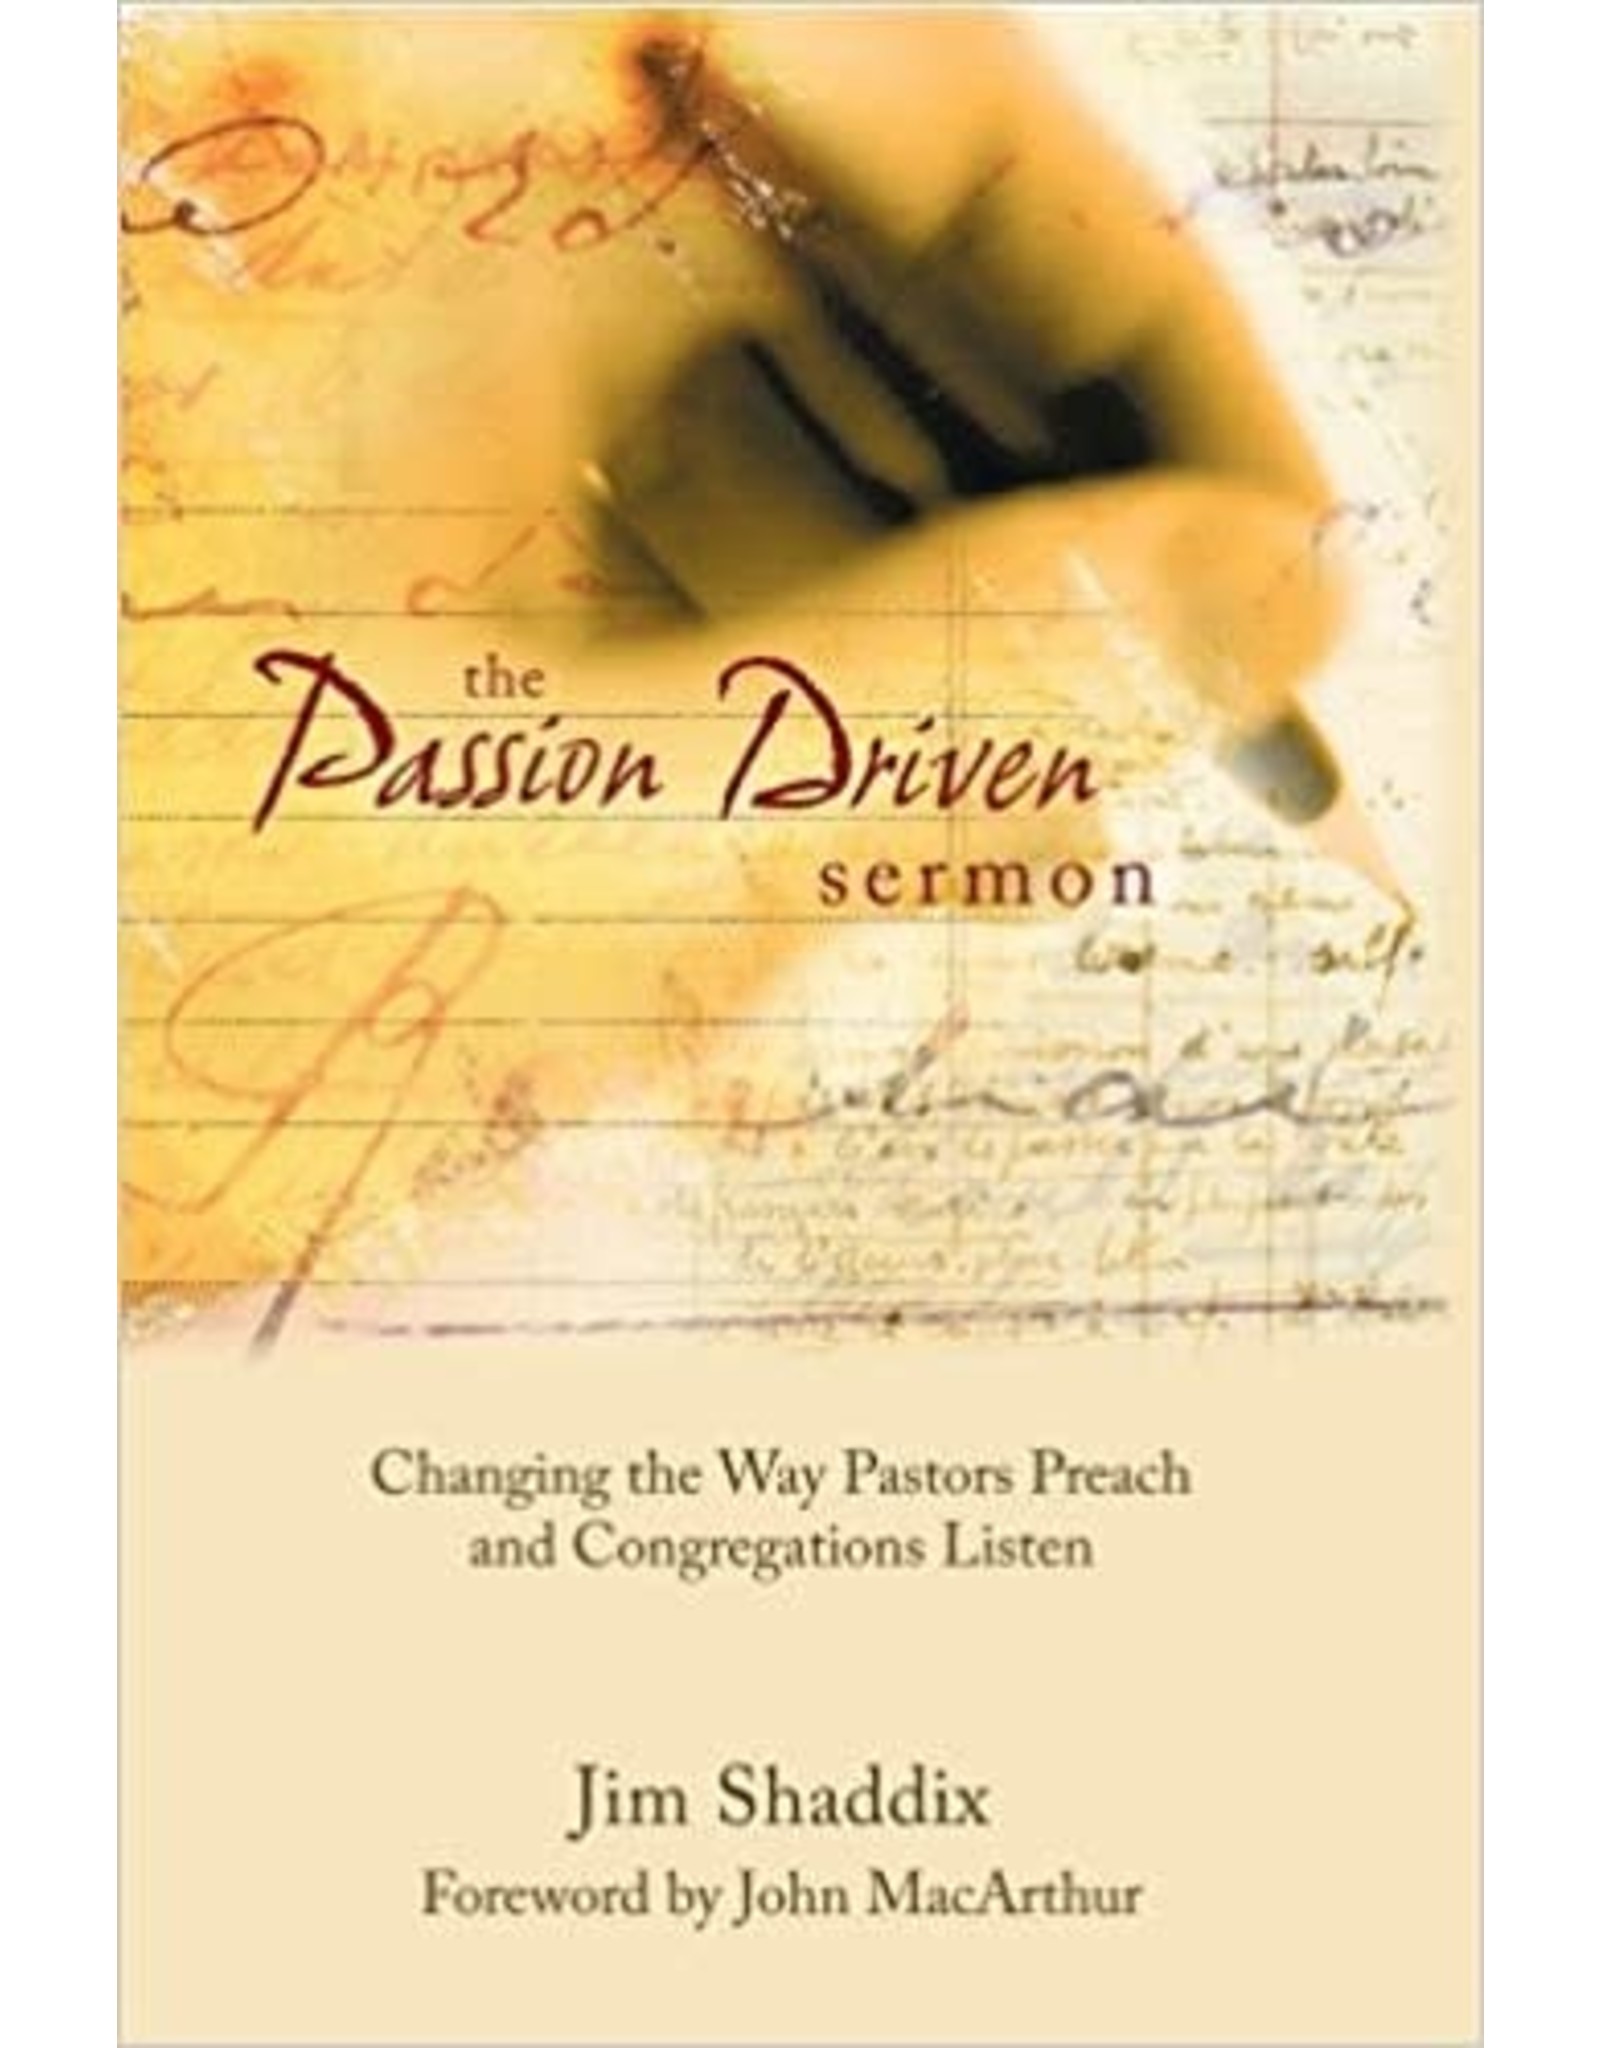 Jim Shaddix The Passion Driven Sermon